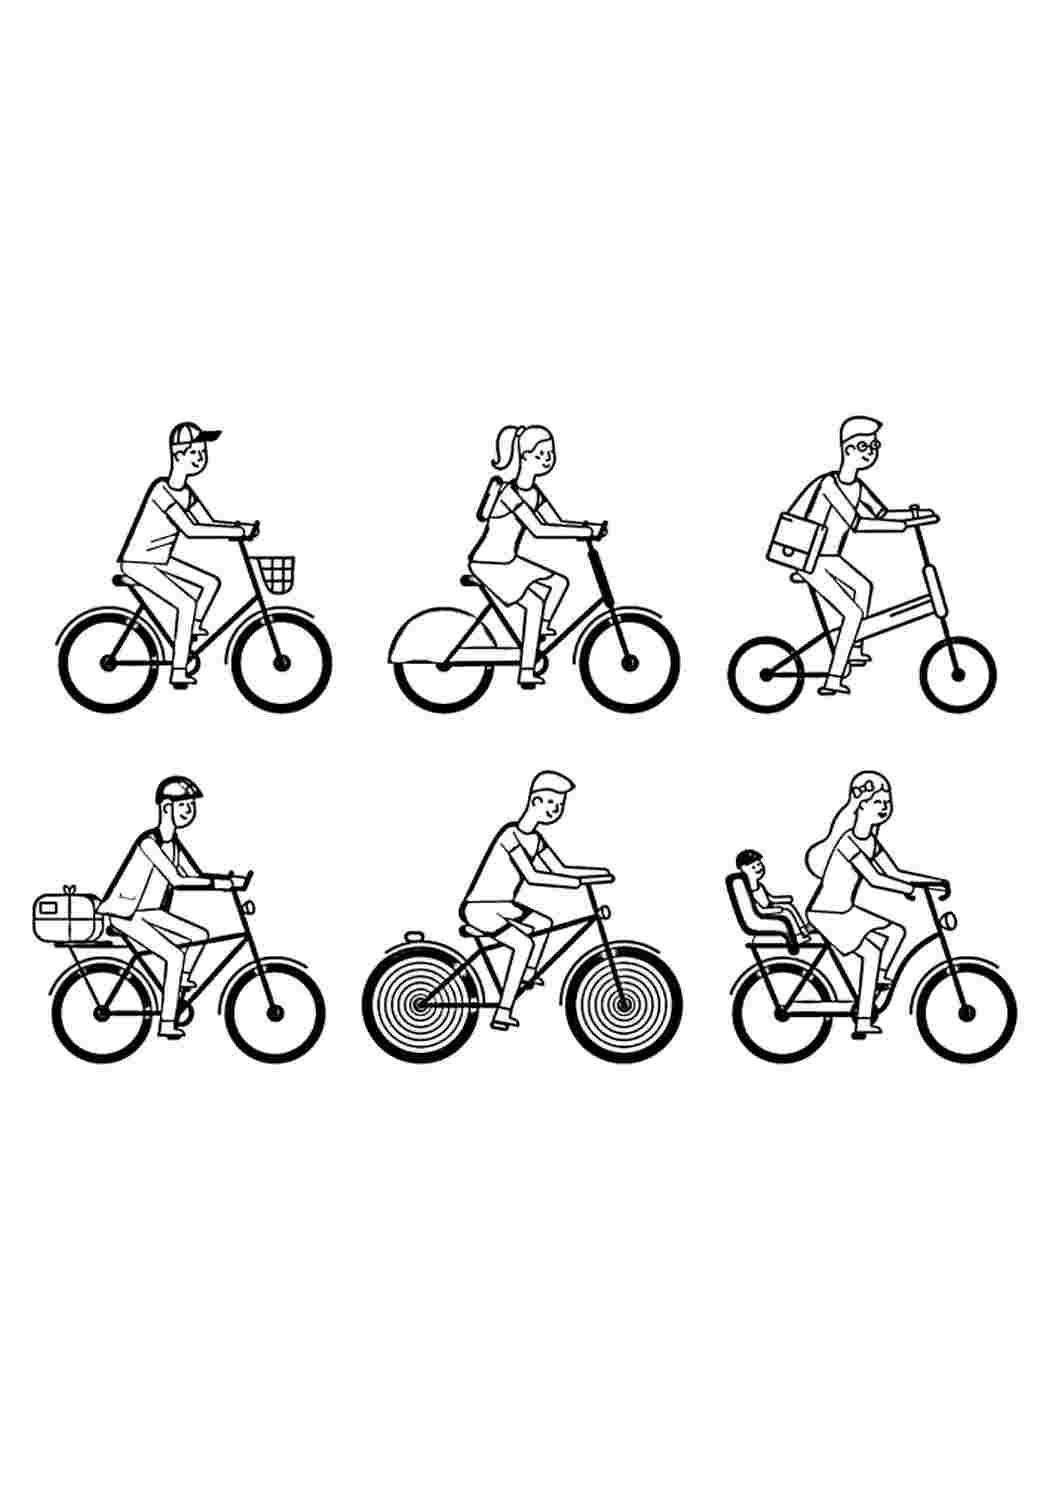 Раскраски 6 разных изображений велосипедистов в одной раскраске. Раскраски. 6 разных изображений велосипедистов в одной раскраске. Лучшие раскраски.